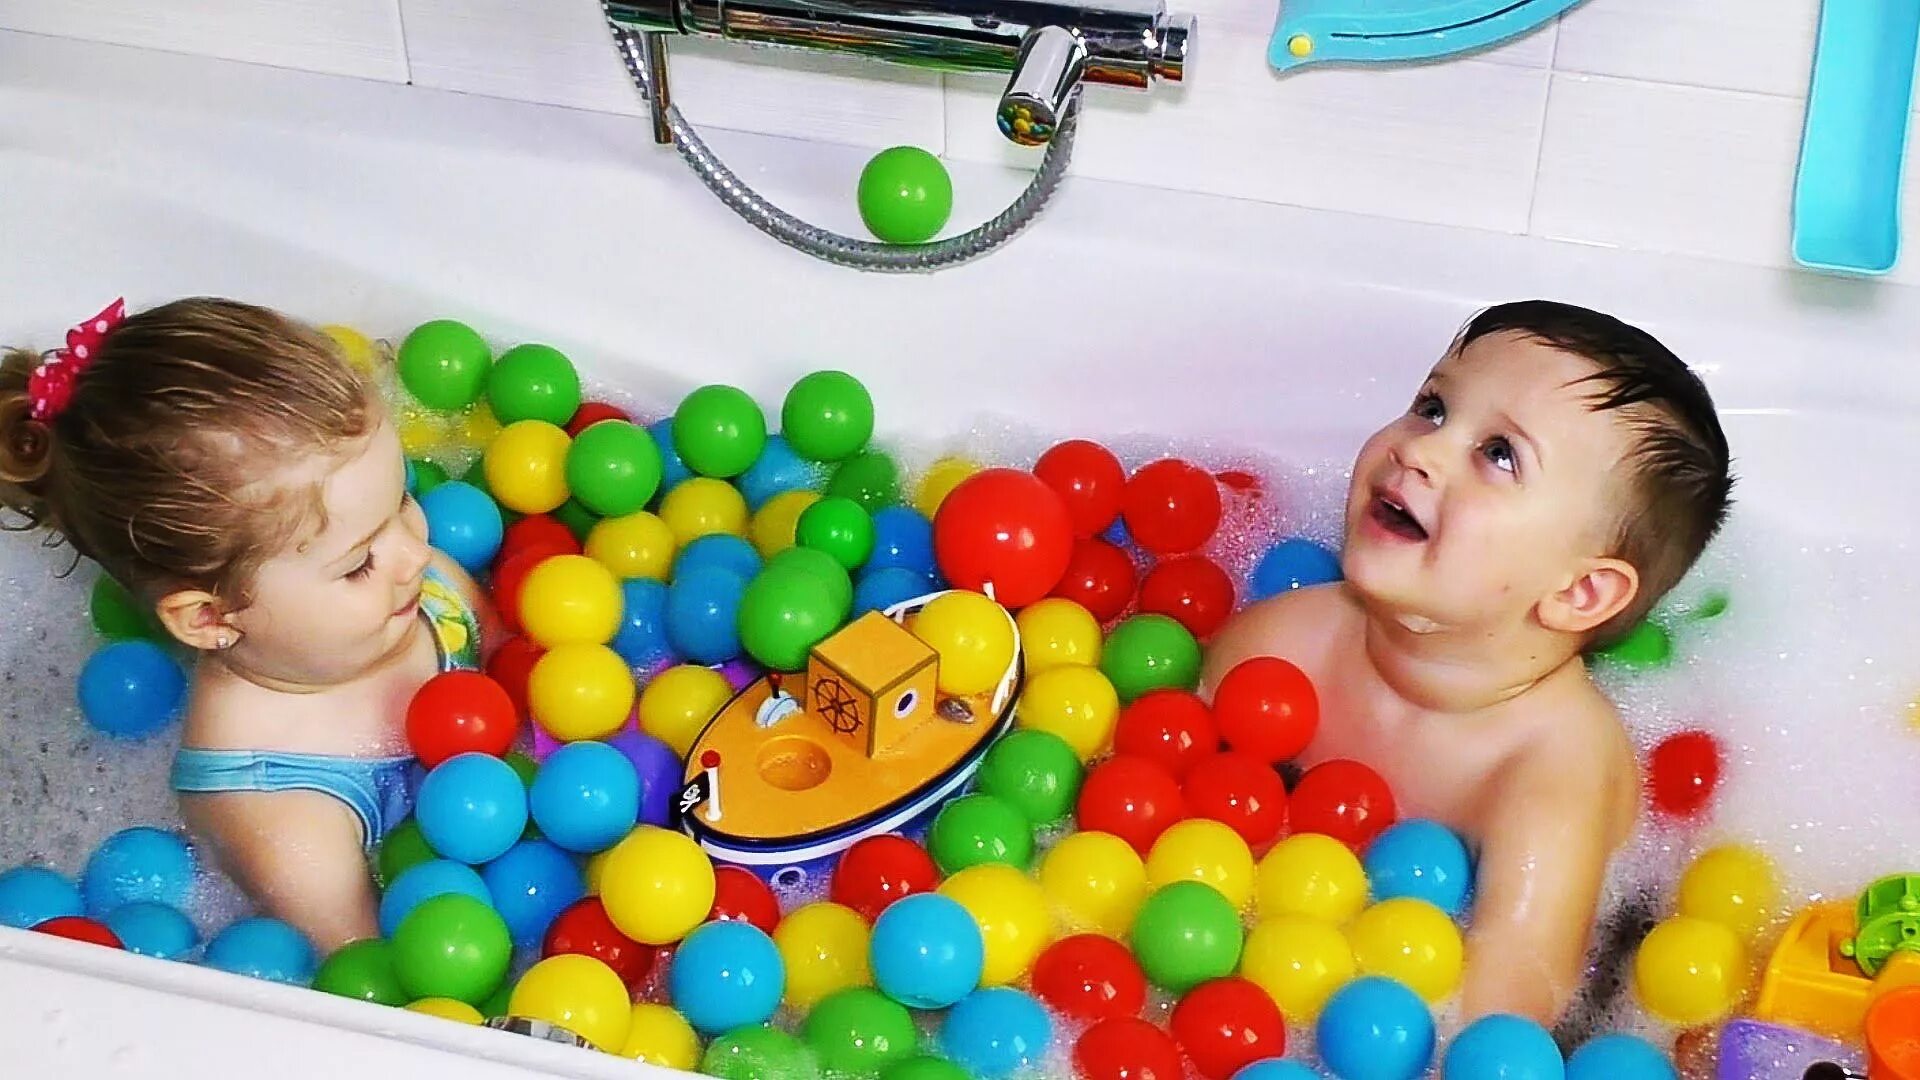 Игрушка для ванны. Игрушки для купания малышей. Развлечение в ванной для детей. Шарики для купания в ванной для детей.